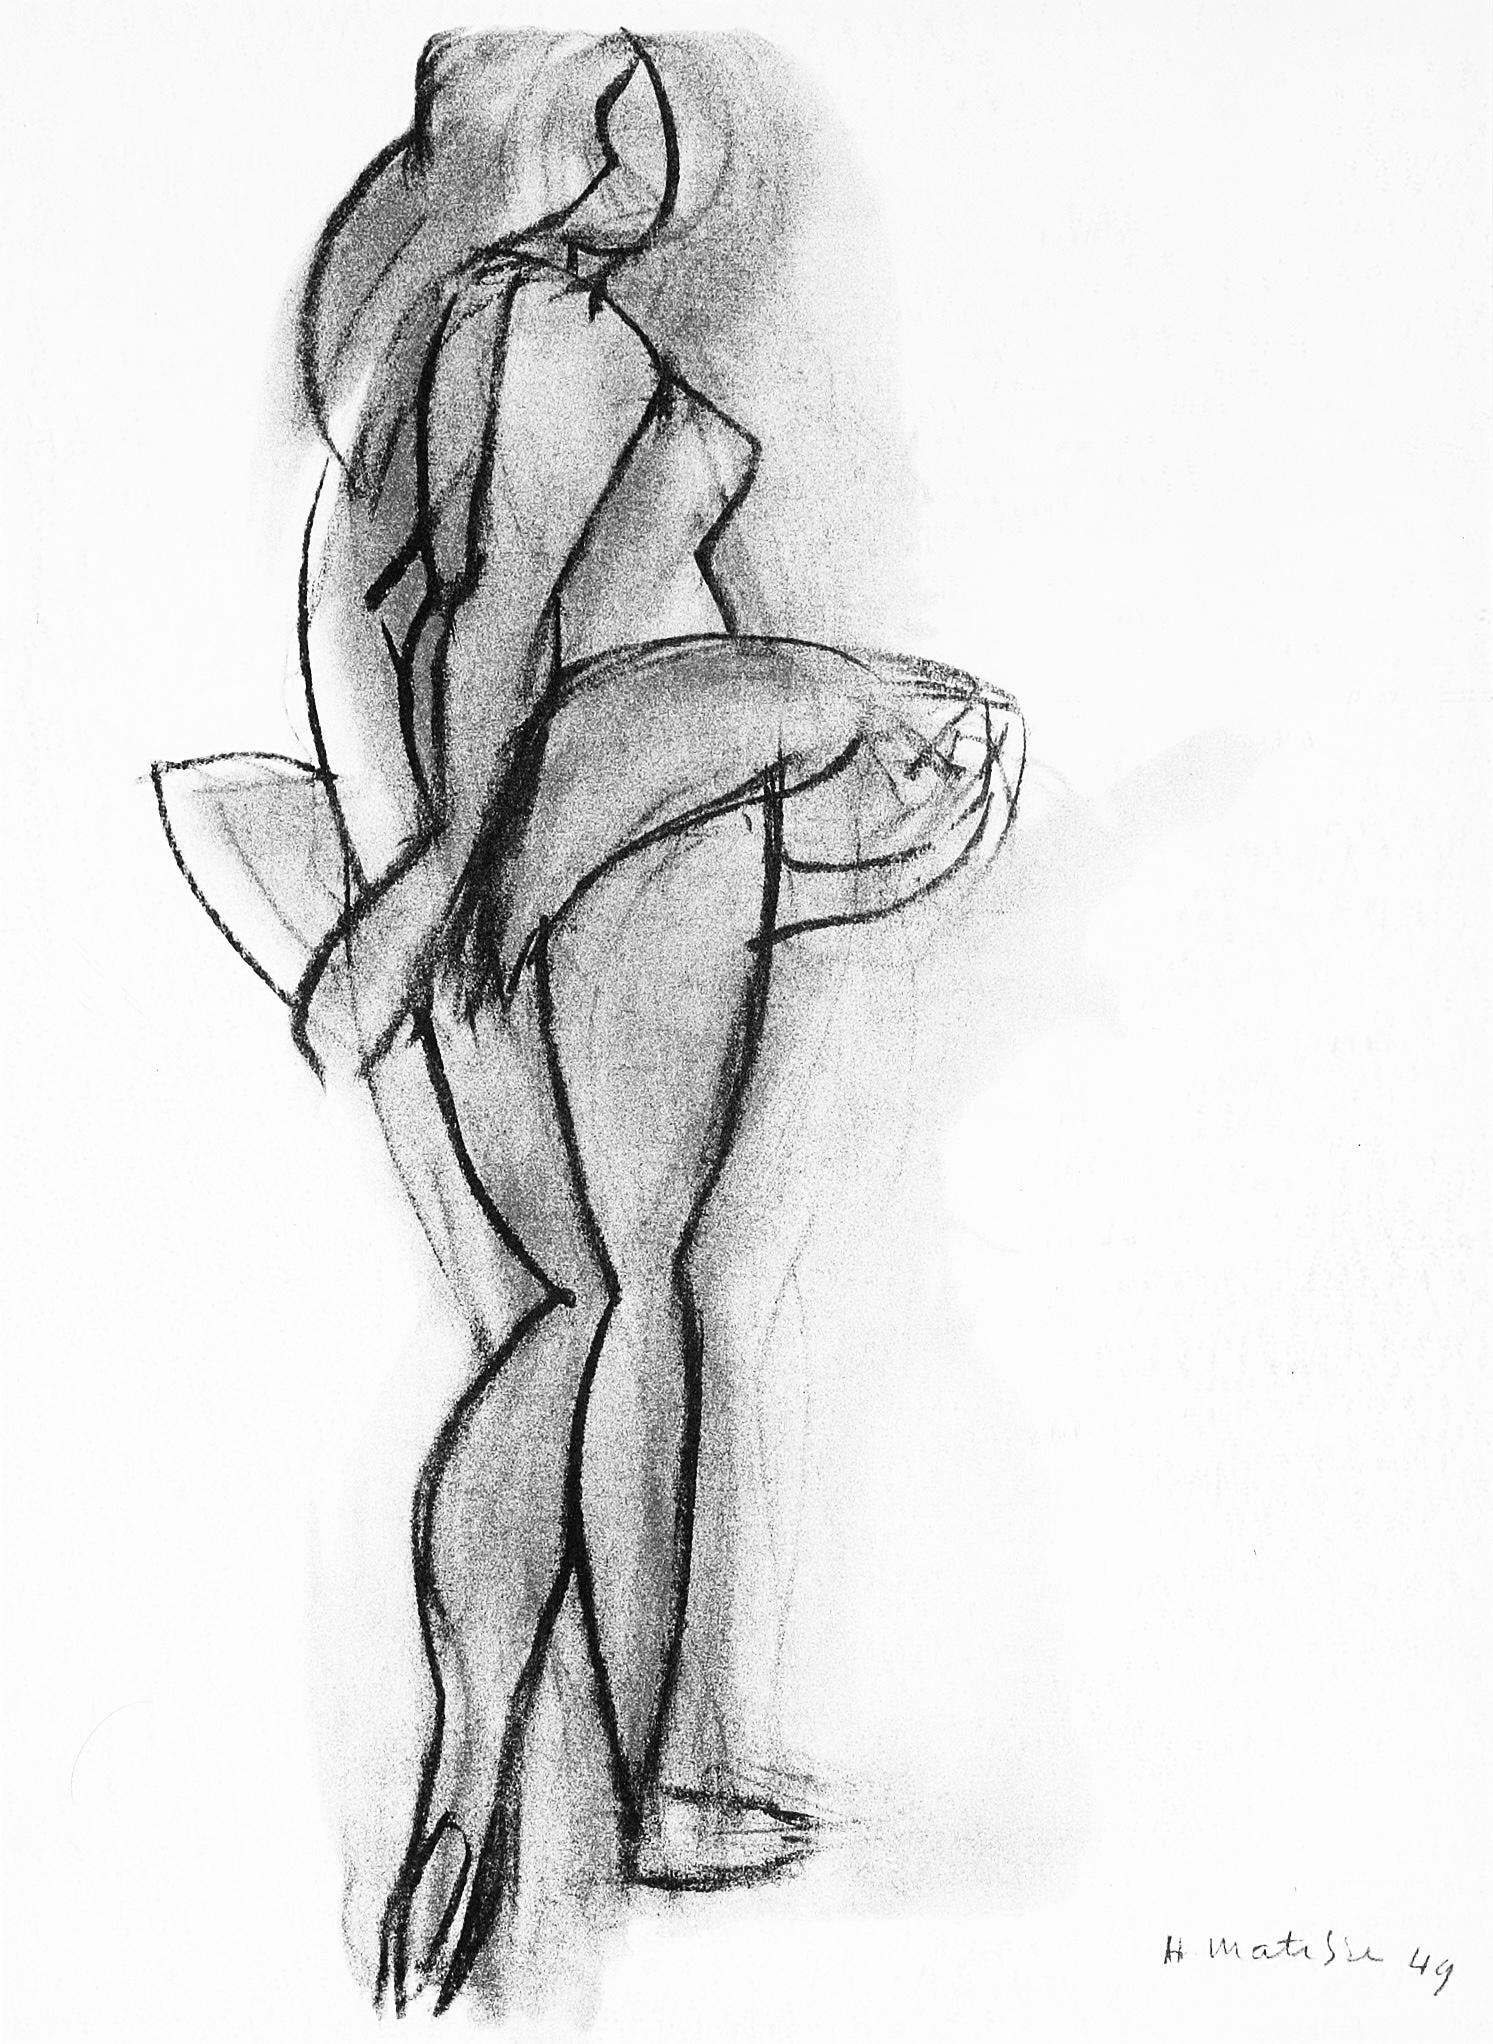 Matisse, Figure Study, Derrière le miroir (after)